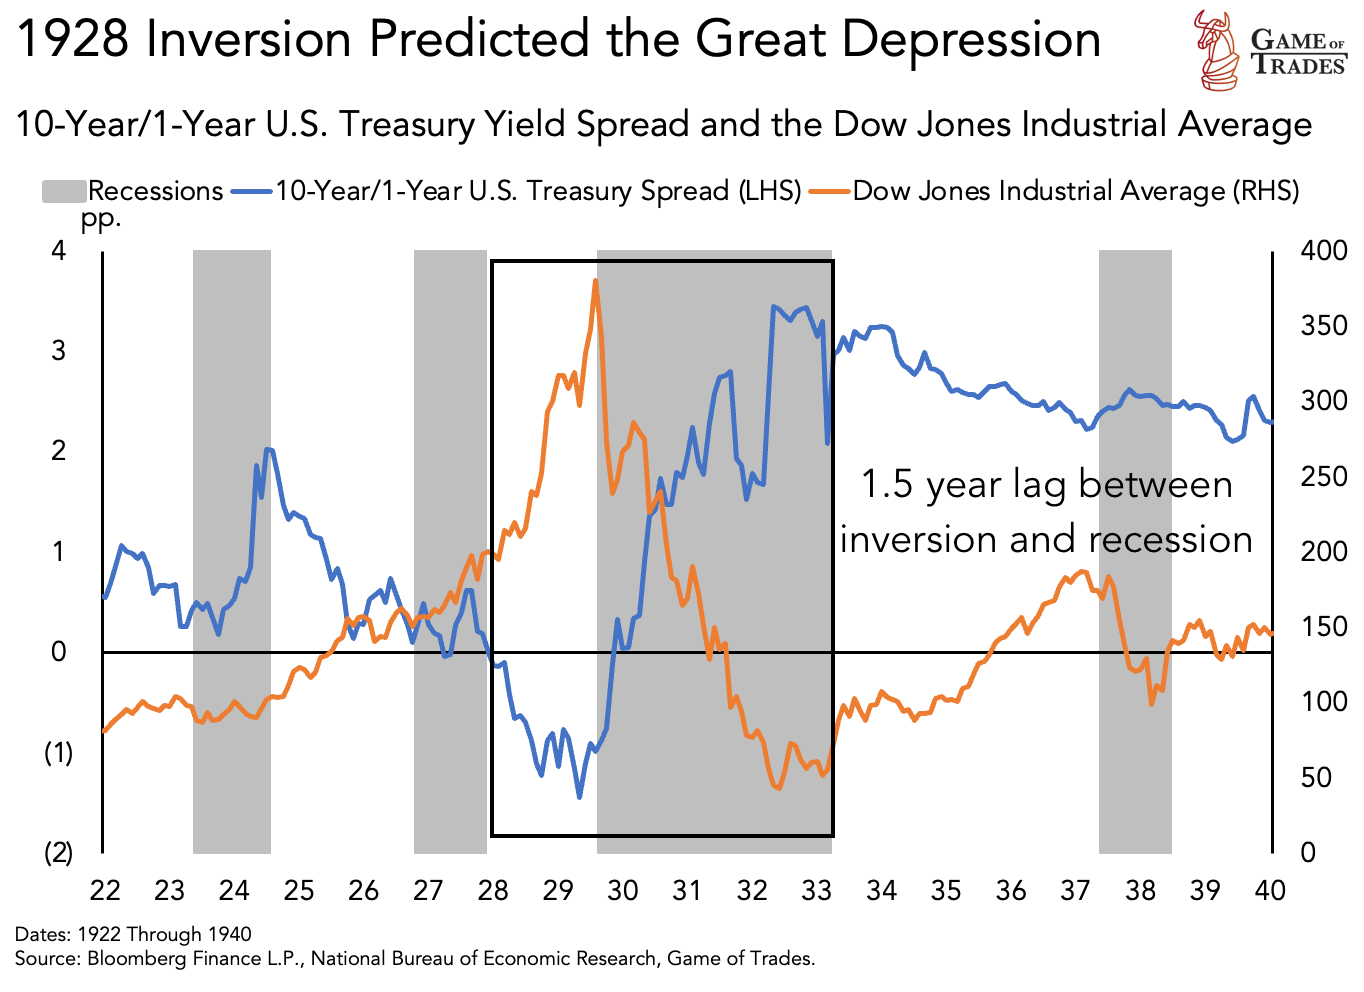 Inversion prediction & Great depression